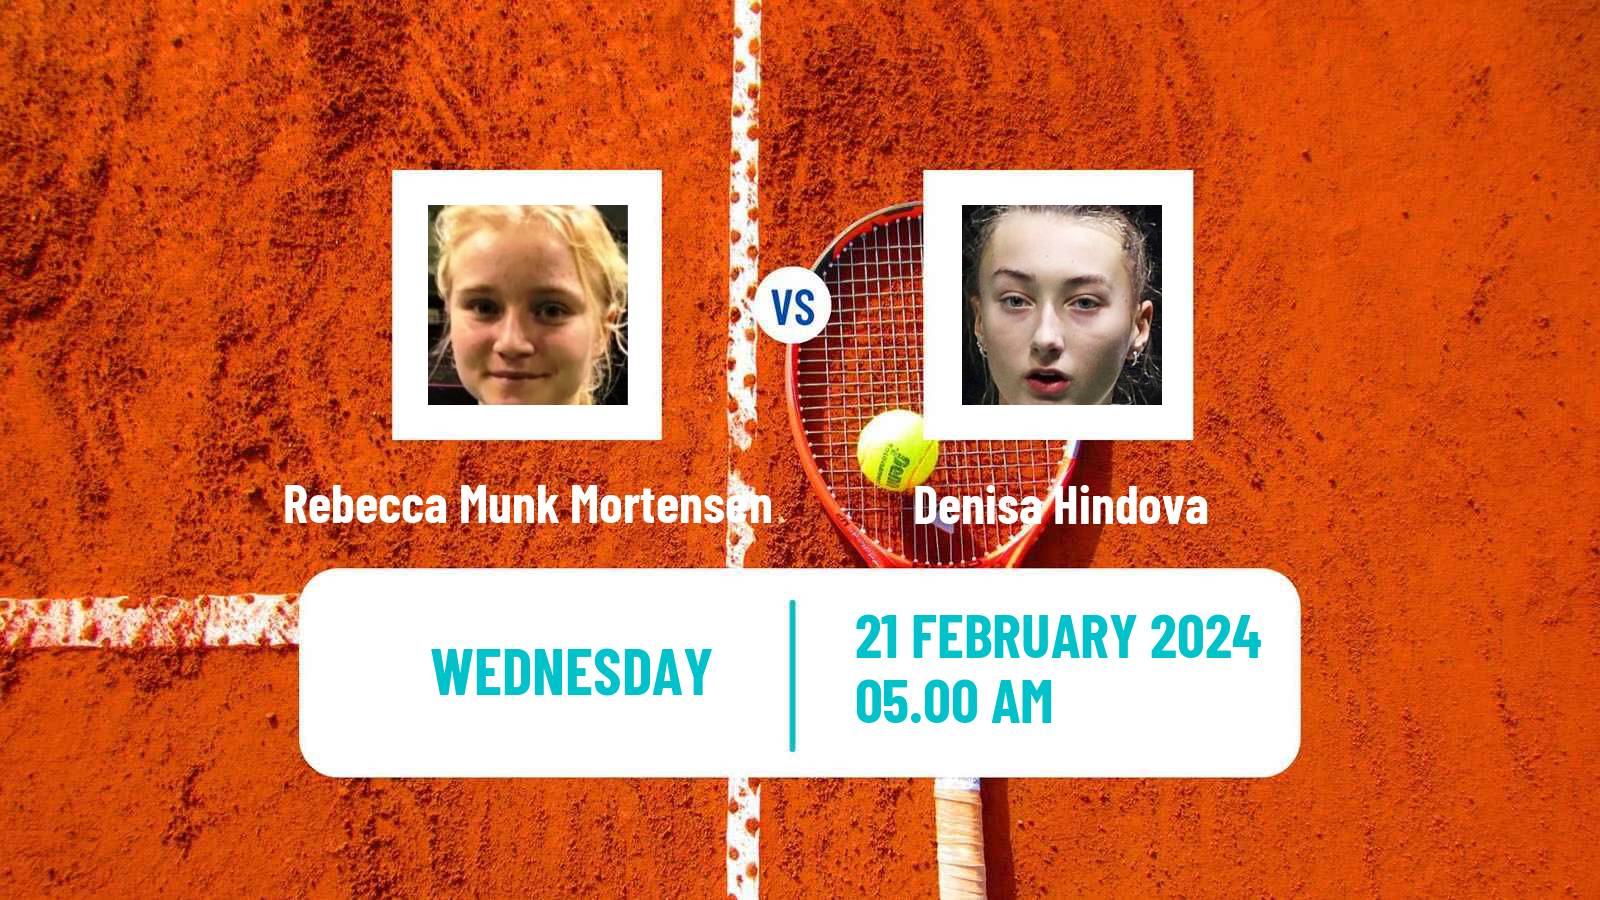 Tennis ITF W15 Manacor 2 Women Rebecca Munk Mortensen - Denisa Hindova